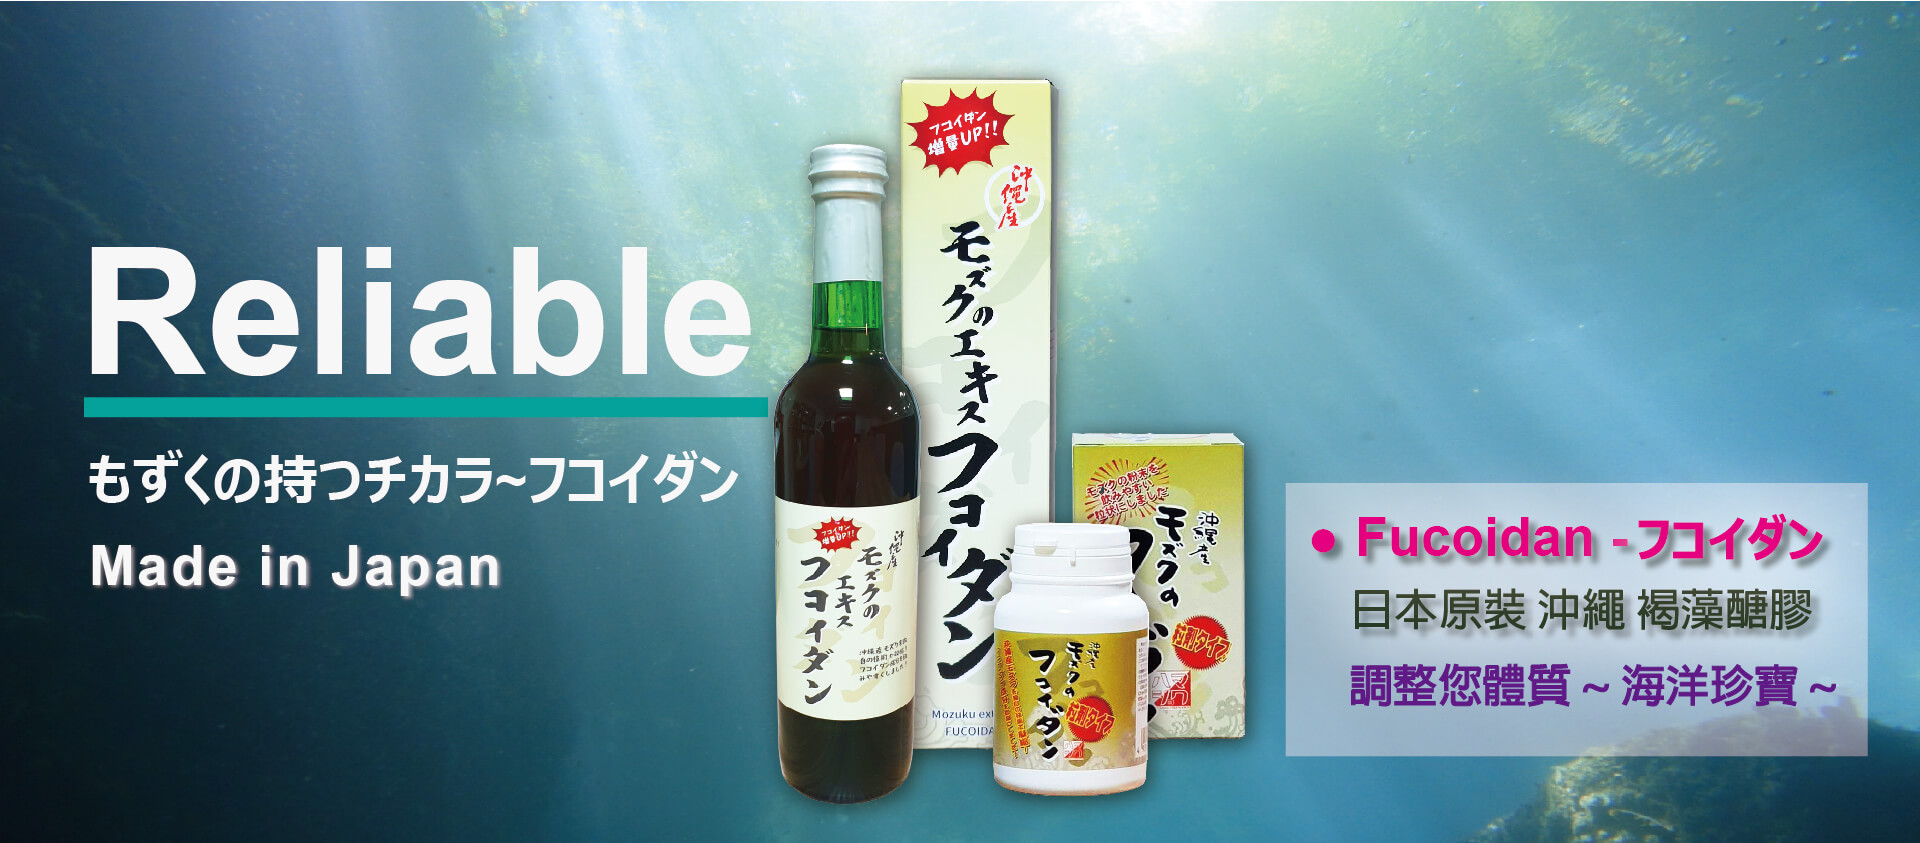 日本沖繩褐藻醣膠含多醣體有效成分含量最高，對身體有相當助益，沖繩也是有名的長壽村